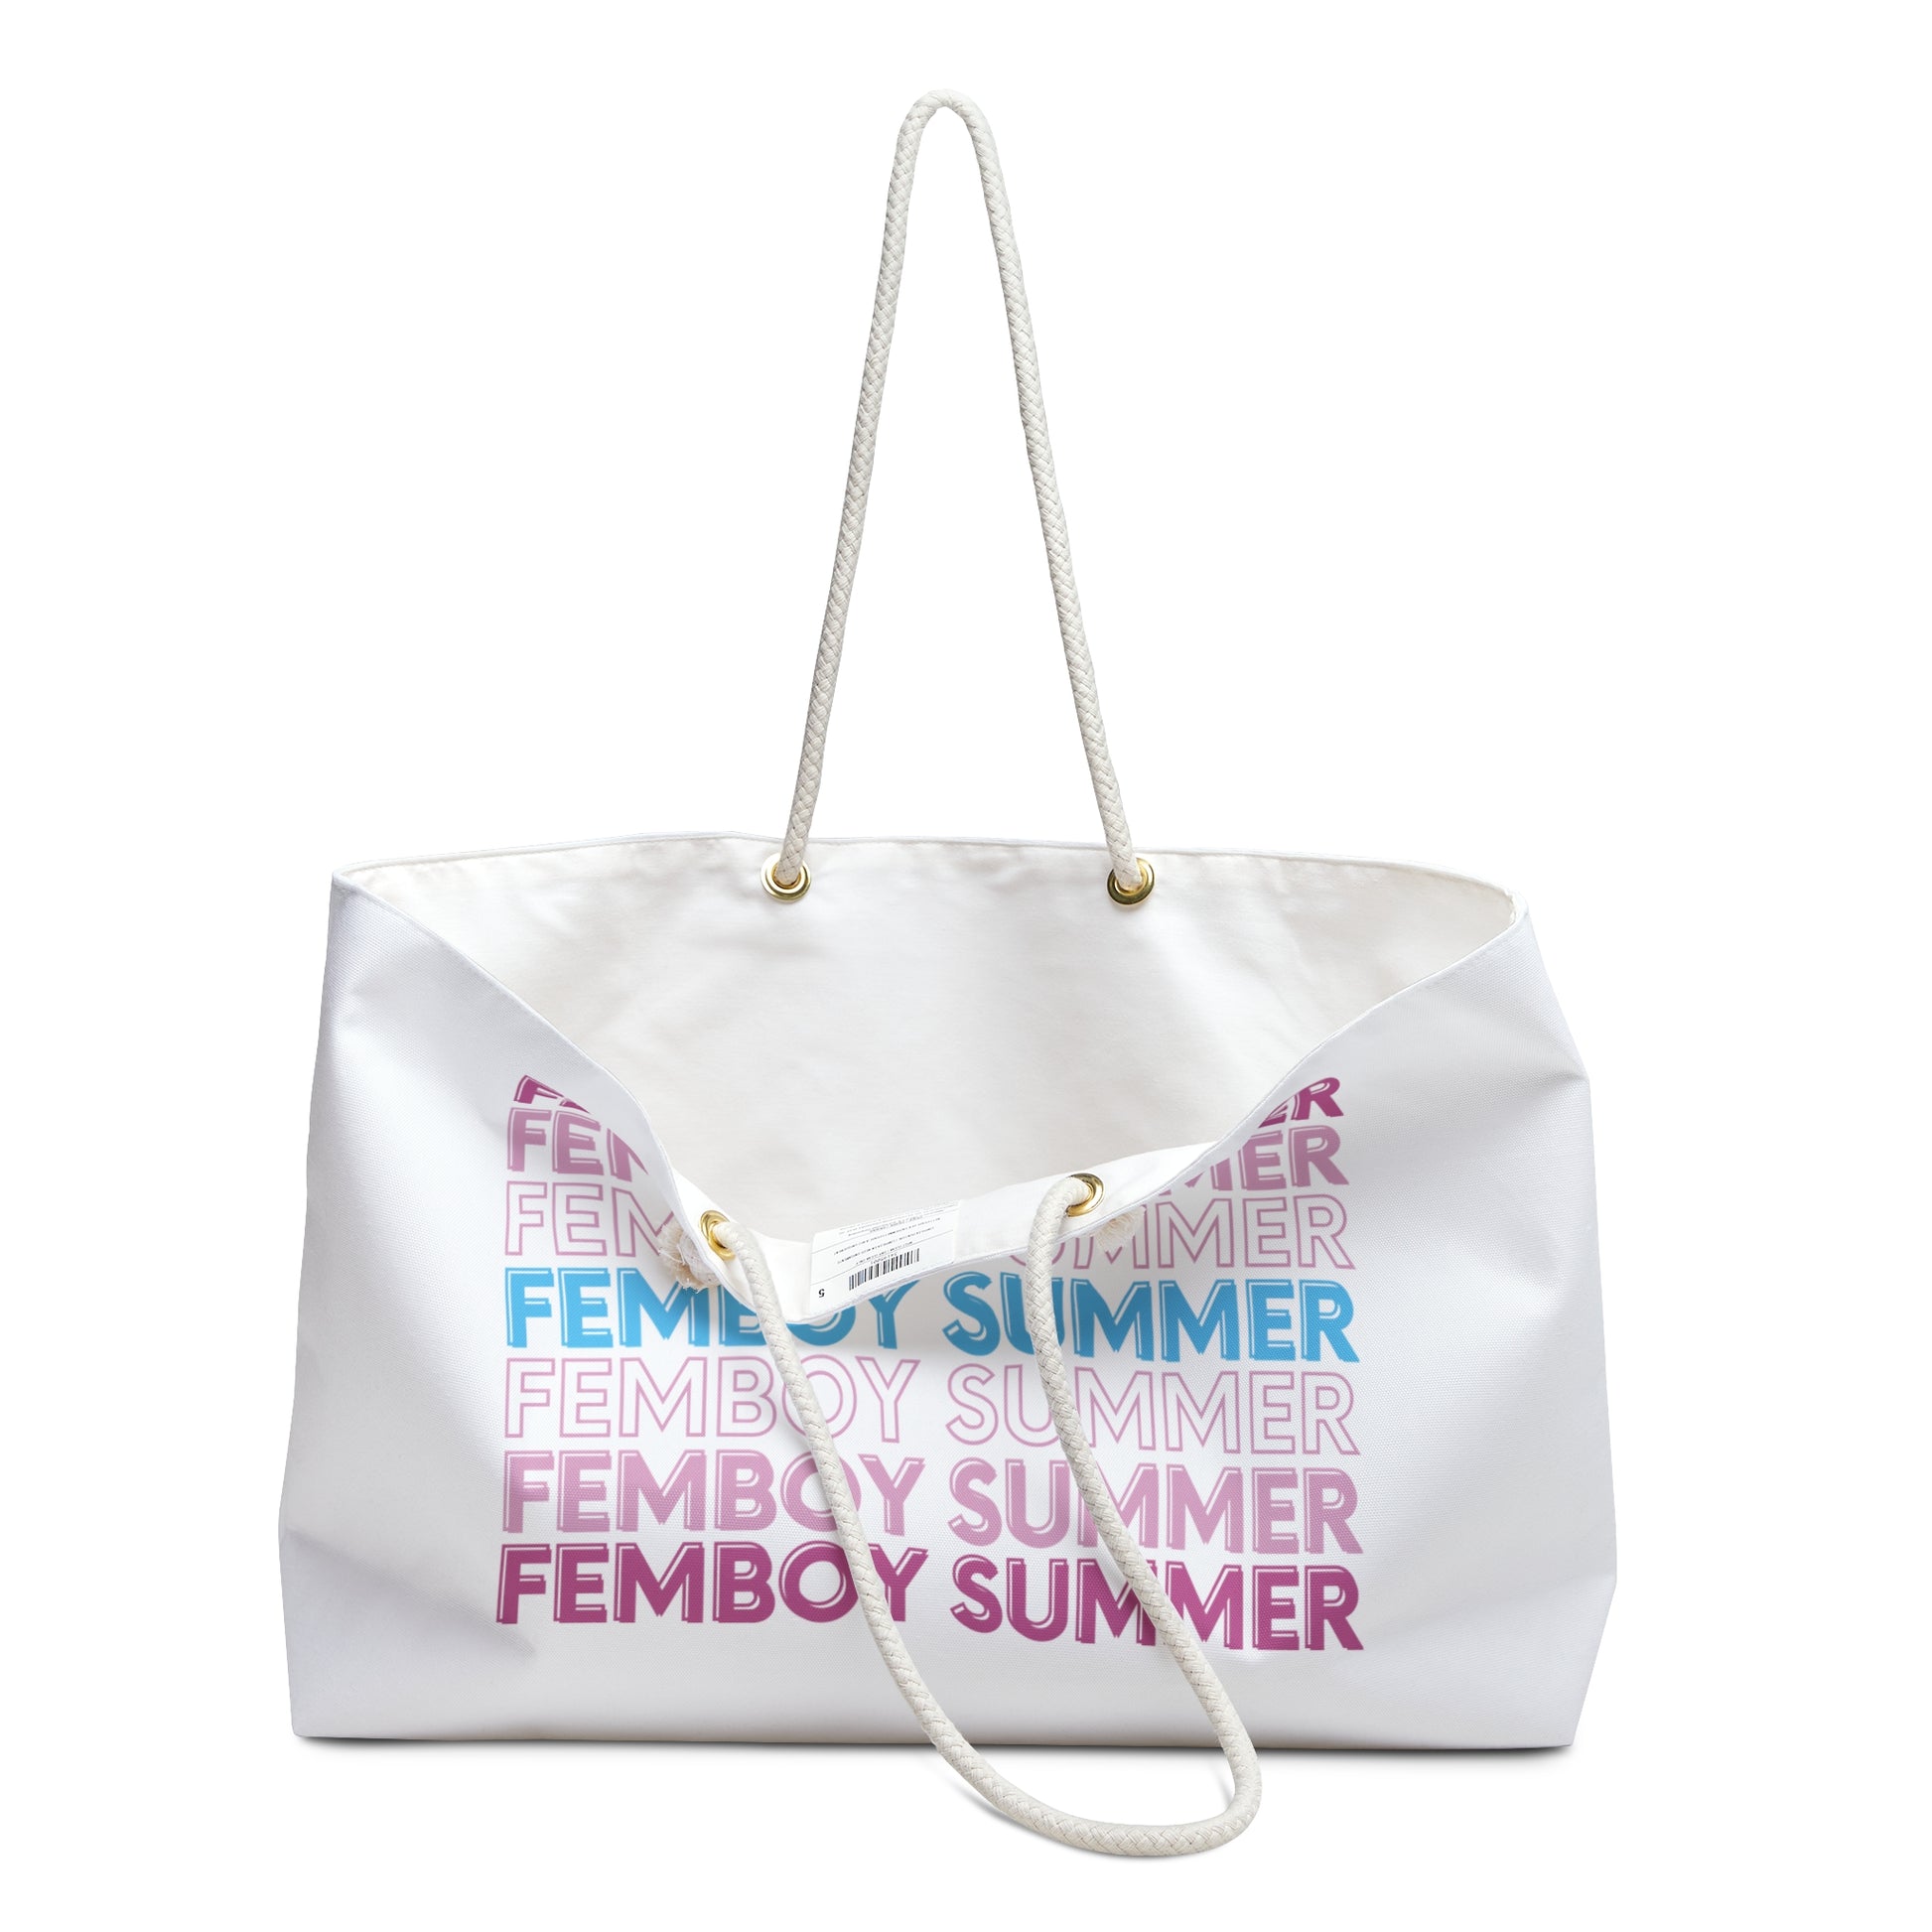 femboy summer apparel – femboysummer